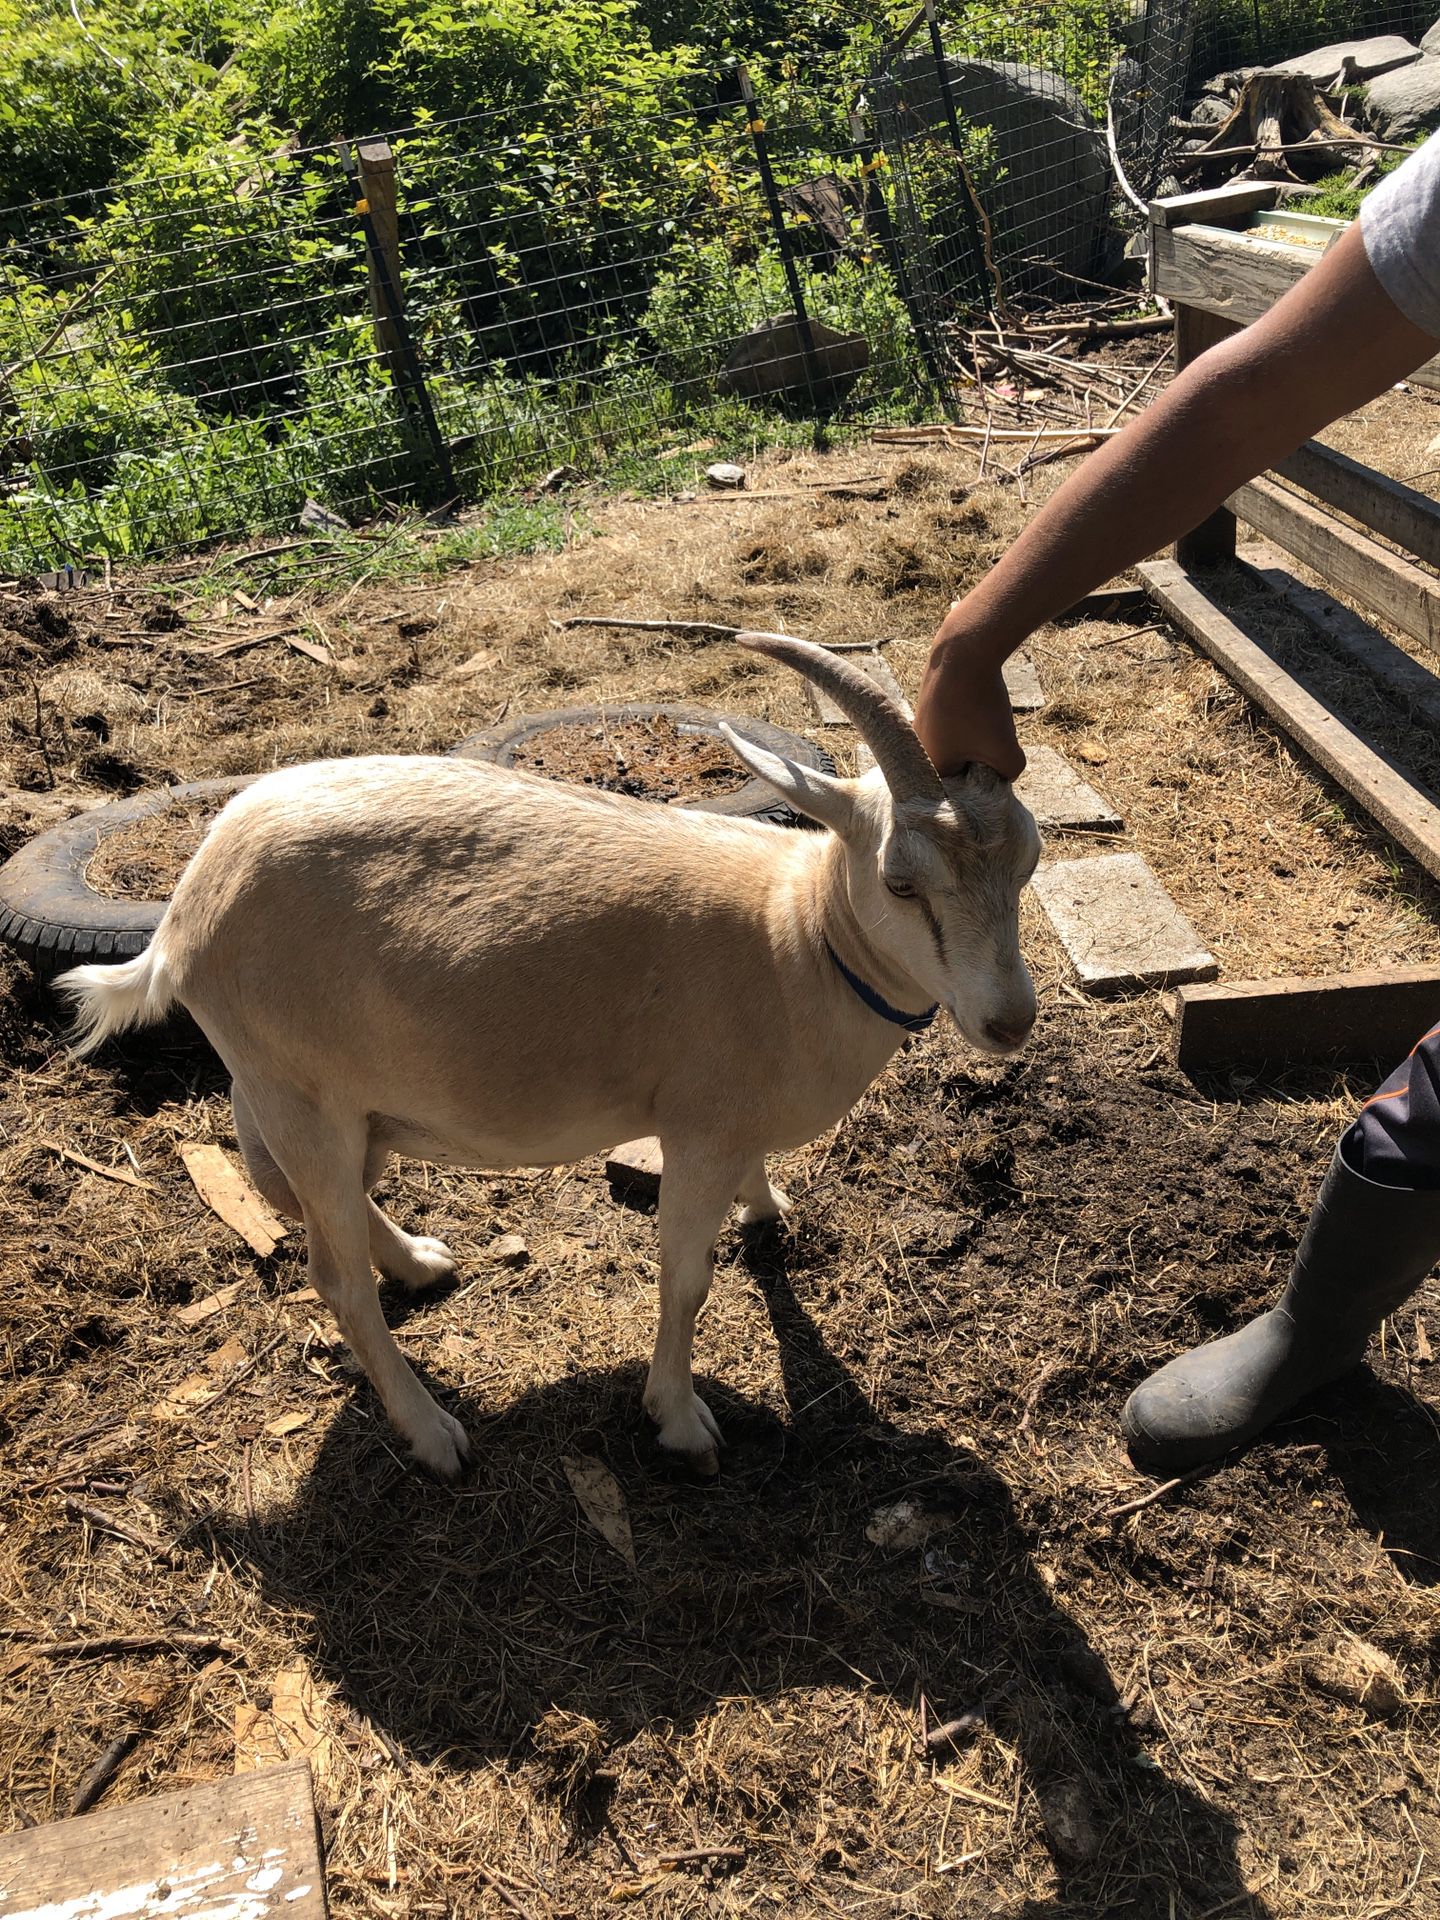 Female goats